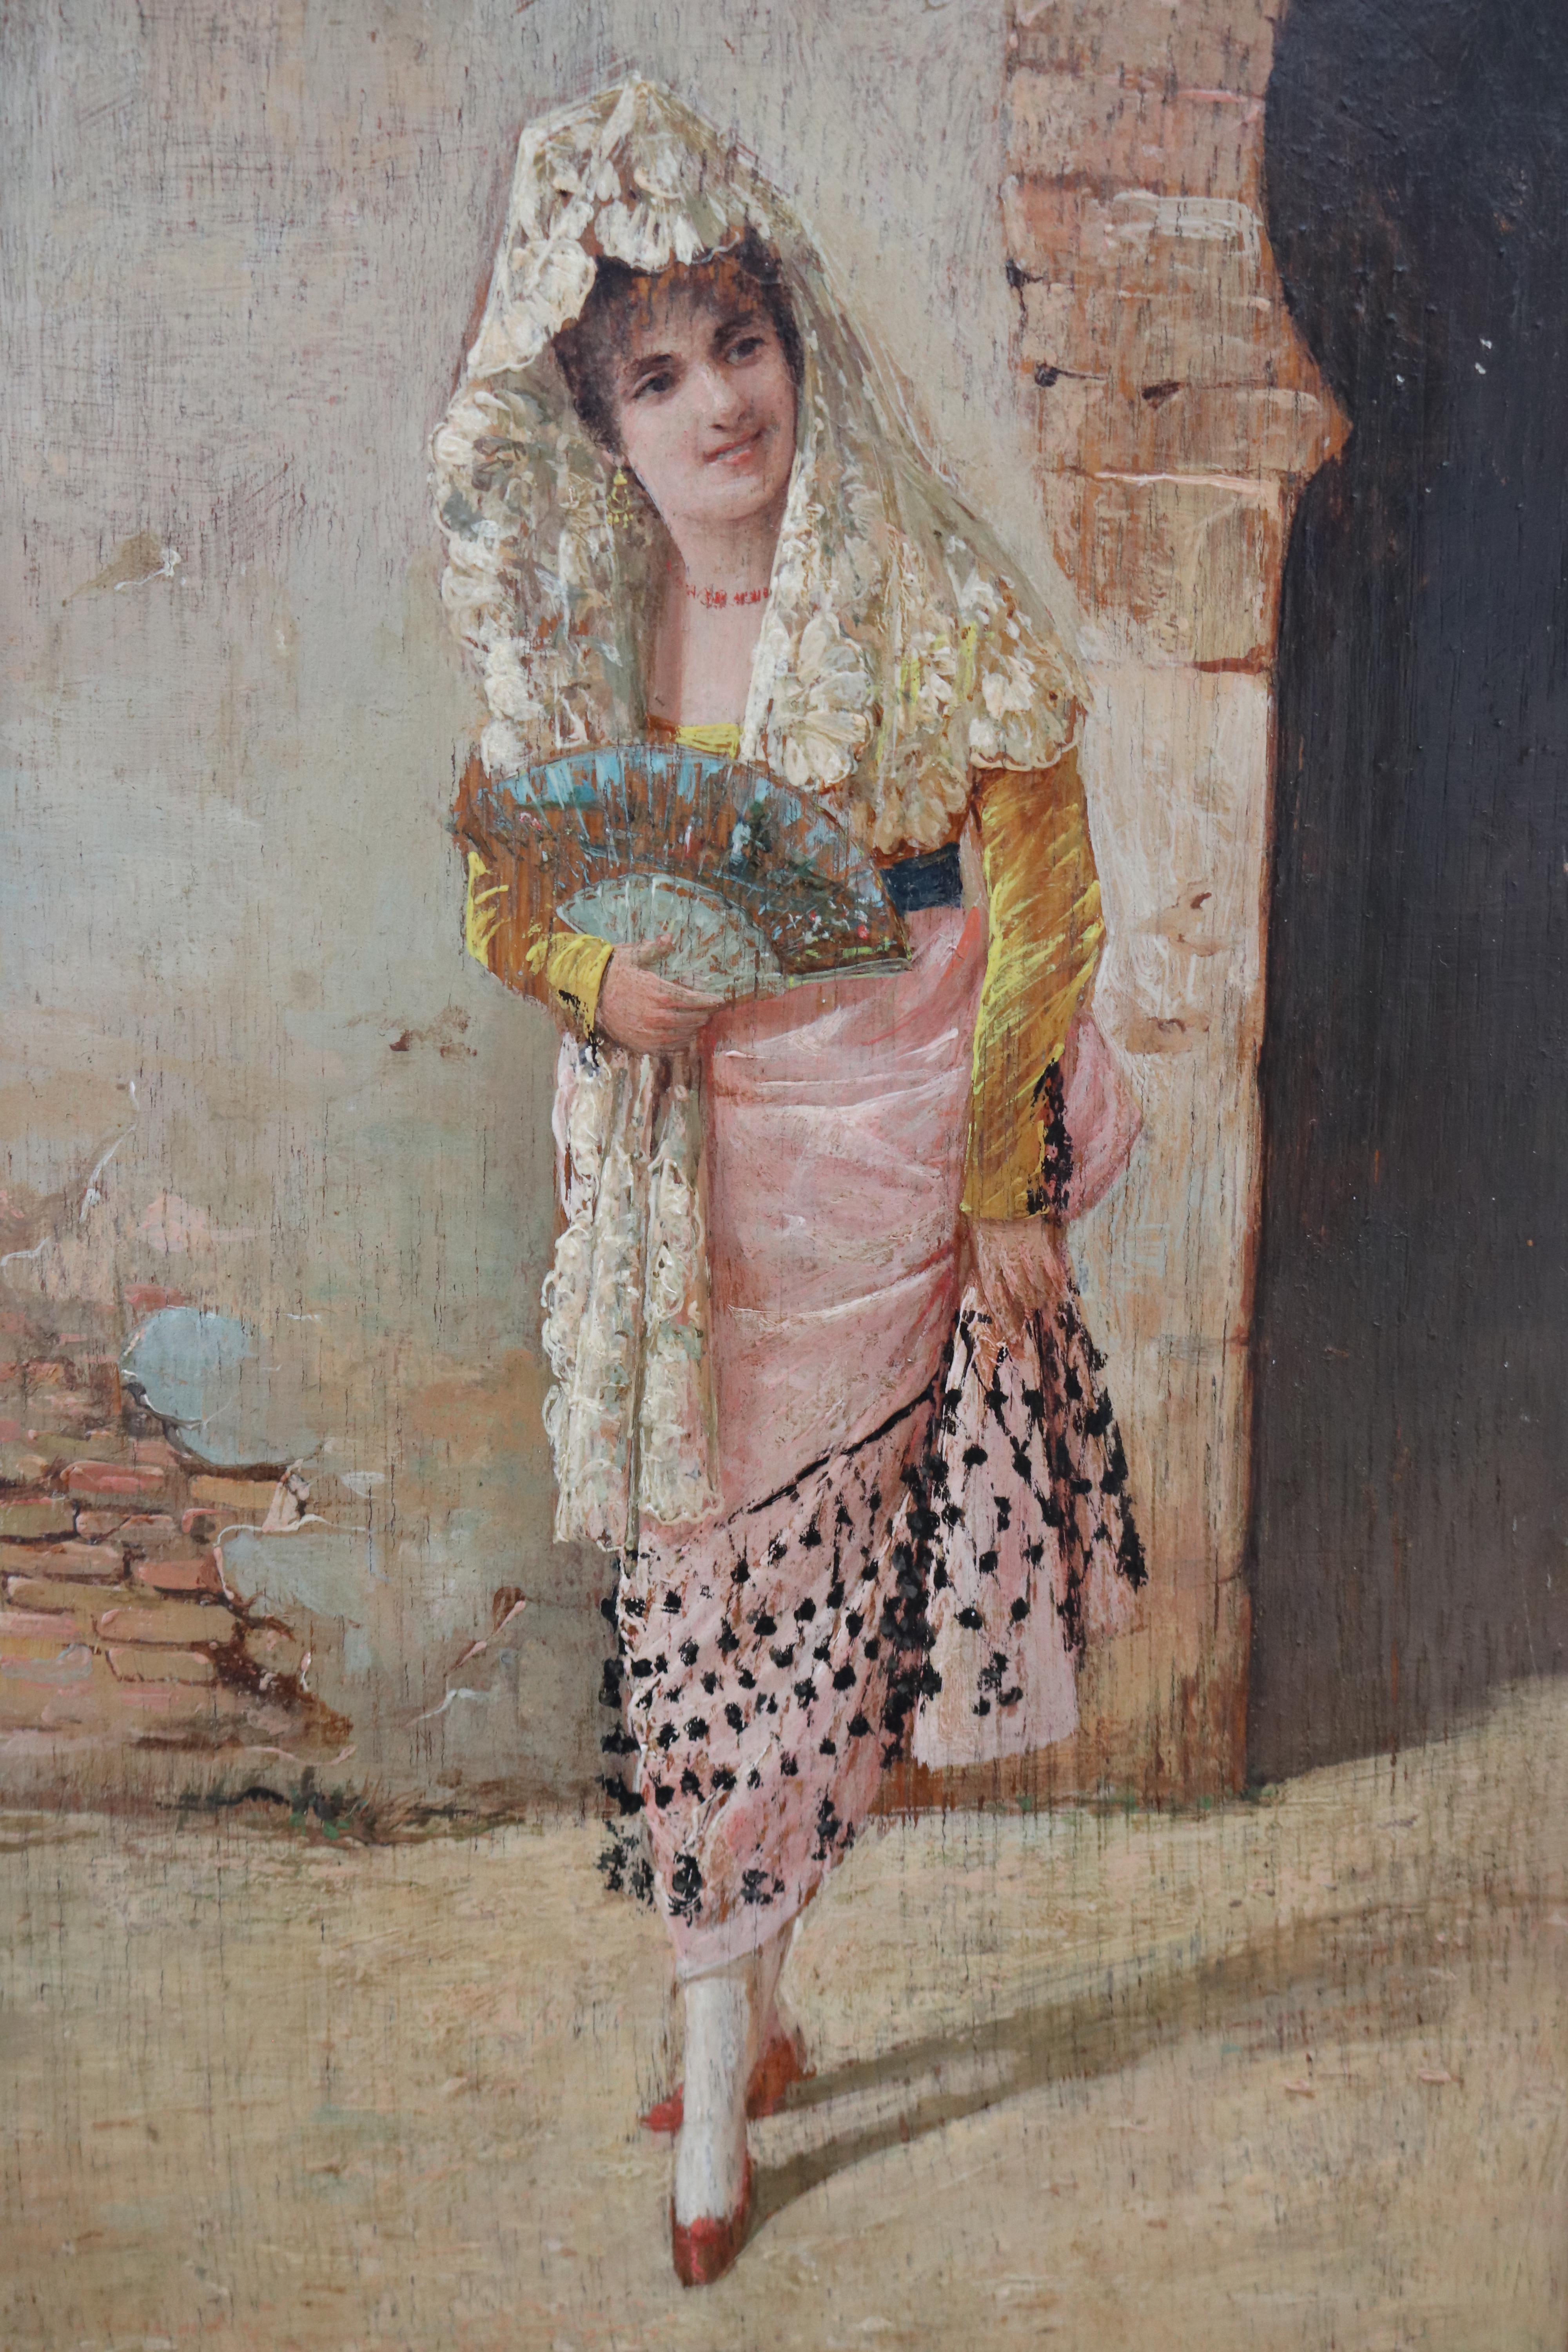 paire de tableaux andalous du 19ème siècle encadrés par A. del Aguila, représentant un torero et une dame habillée pour l'occasion avec le costume traditionnel. 

Dimensions avec cadre : 30.5 x 25 x 2.